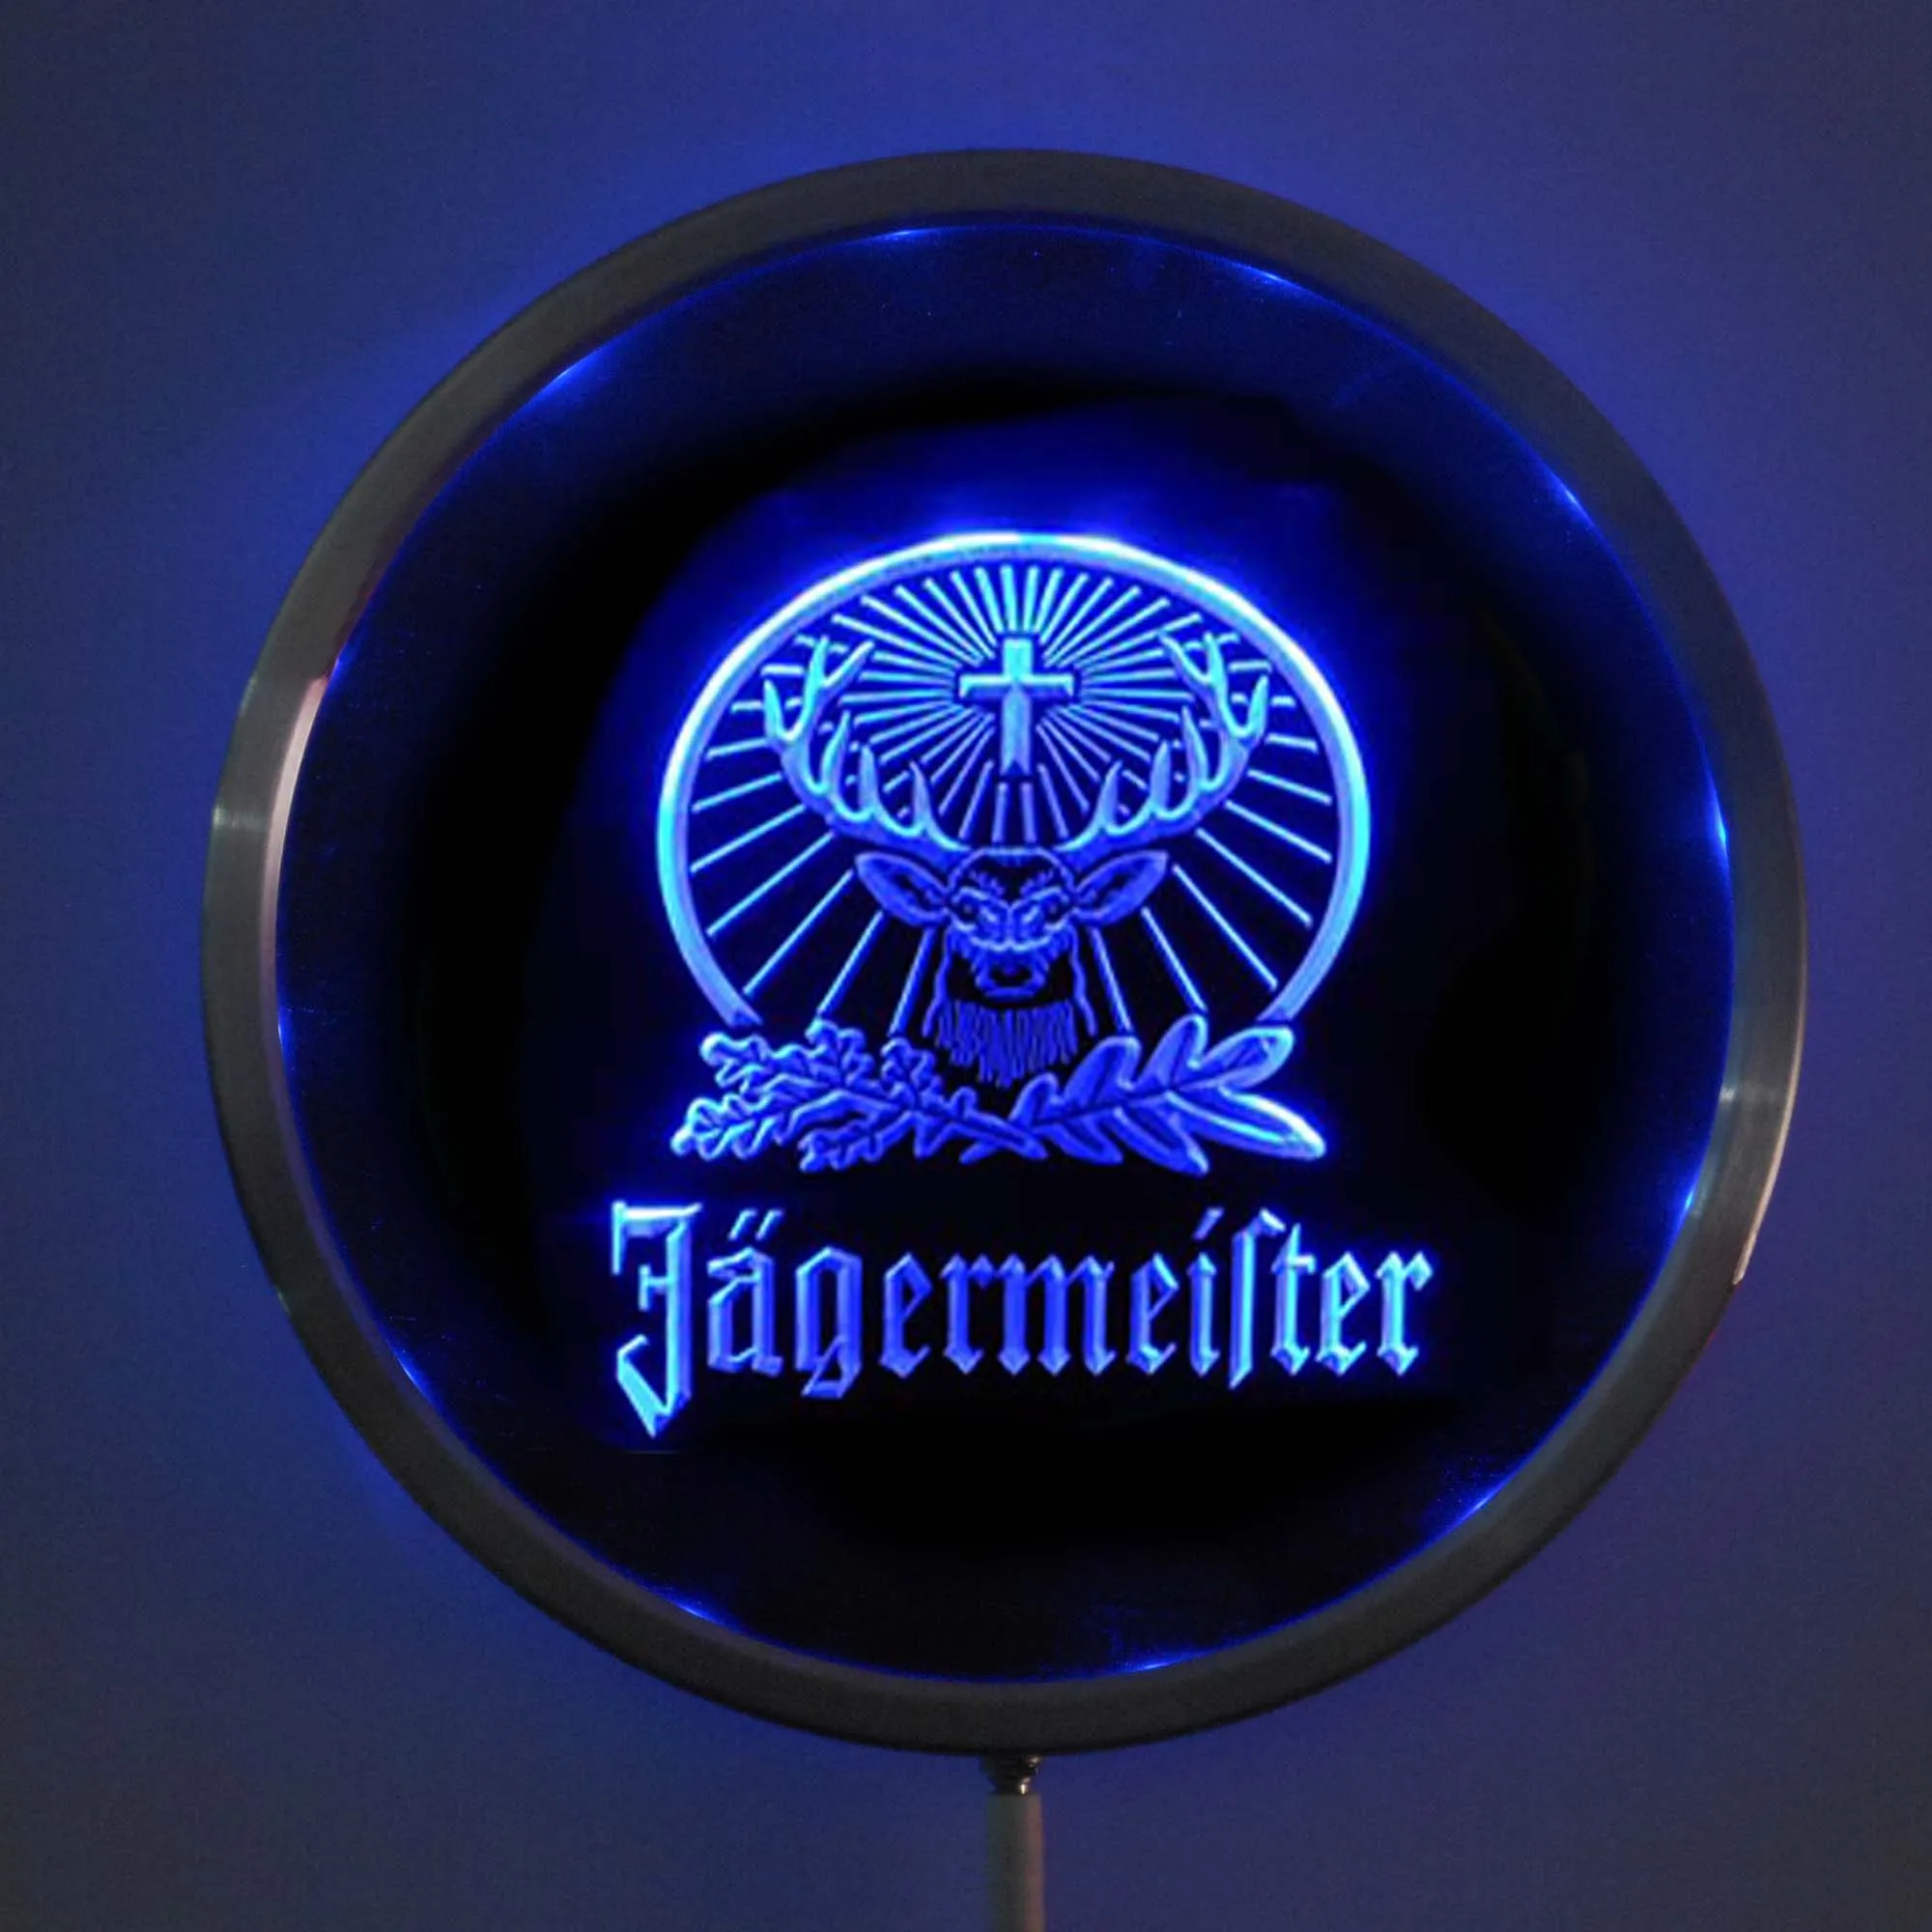 Rs-a0231 Jagermeister олень светодиодный неоновый круглый знак 25 см/10 дюймов-RGB вывеска для бара многоцветный пульт дистанционного управления